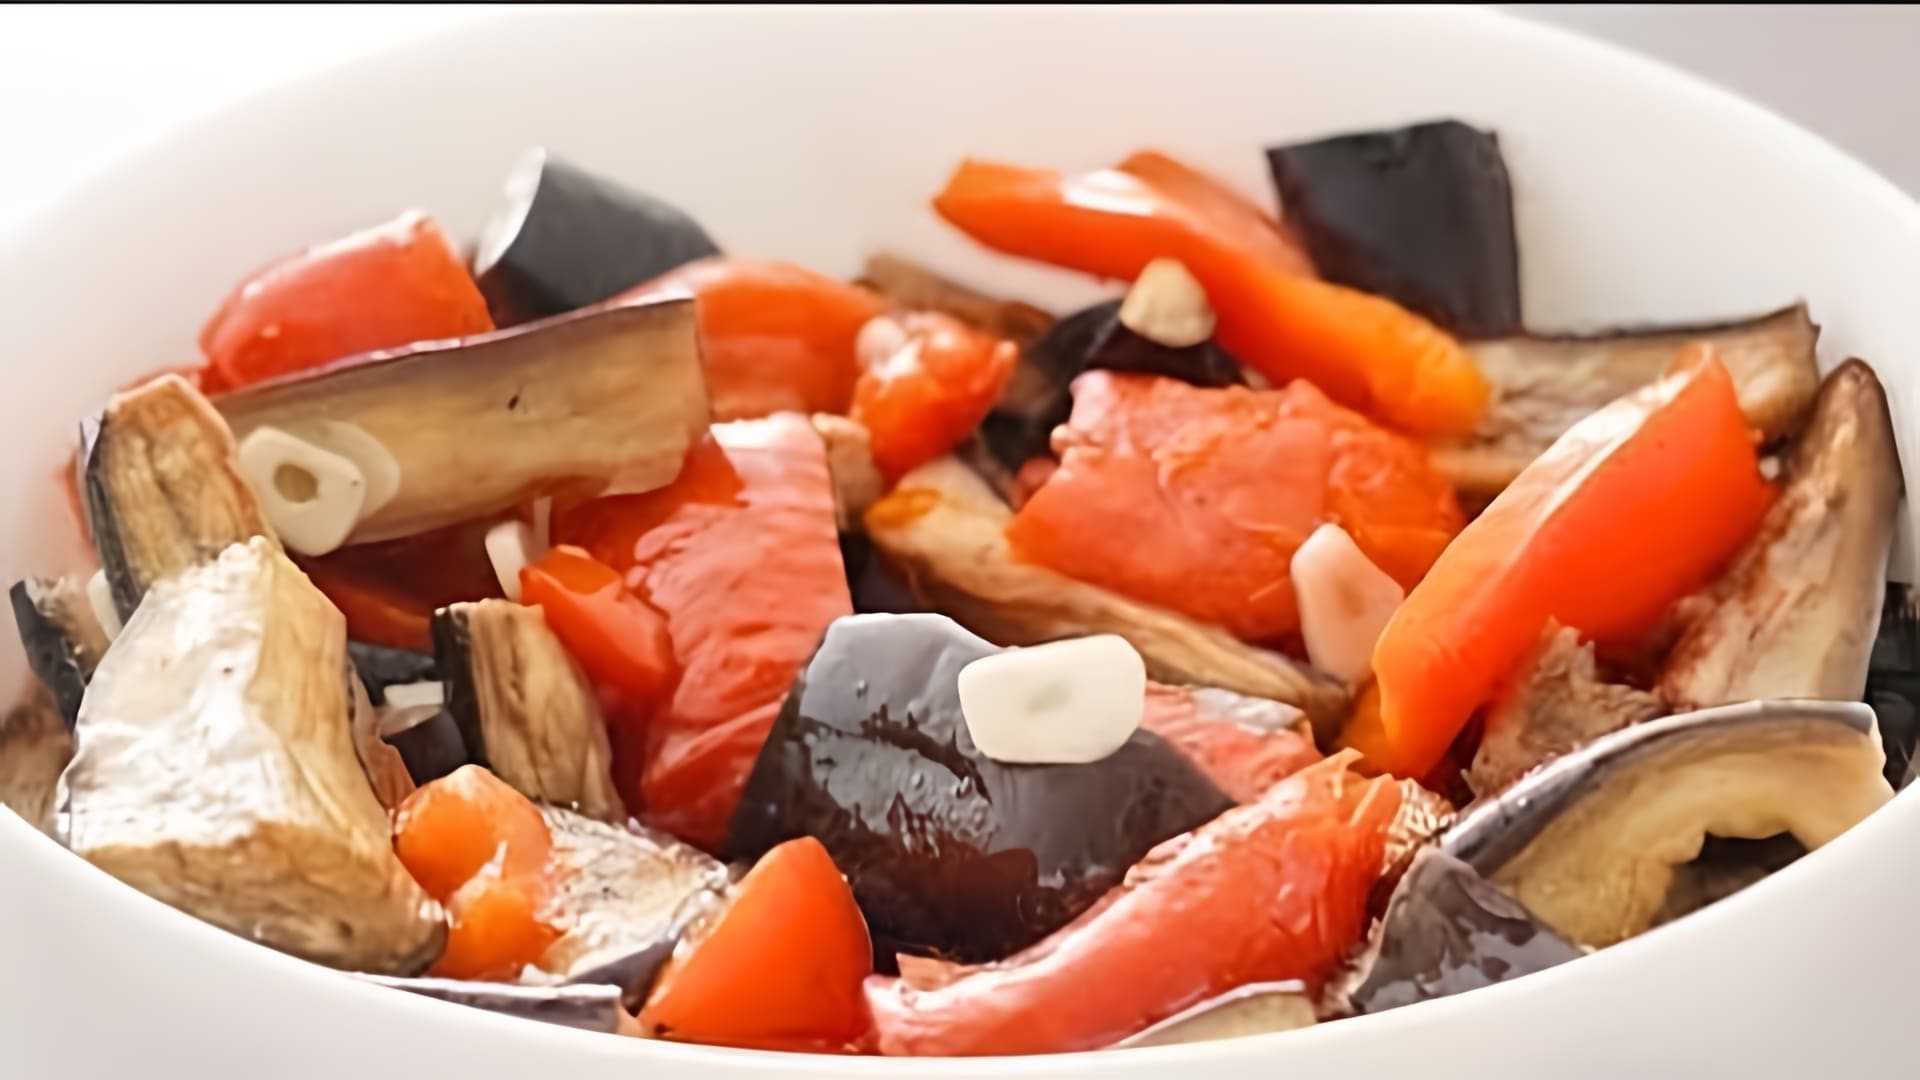 В этом видео демонстрируется процесс приготовления салата из баклажанов и перца